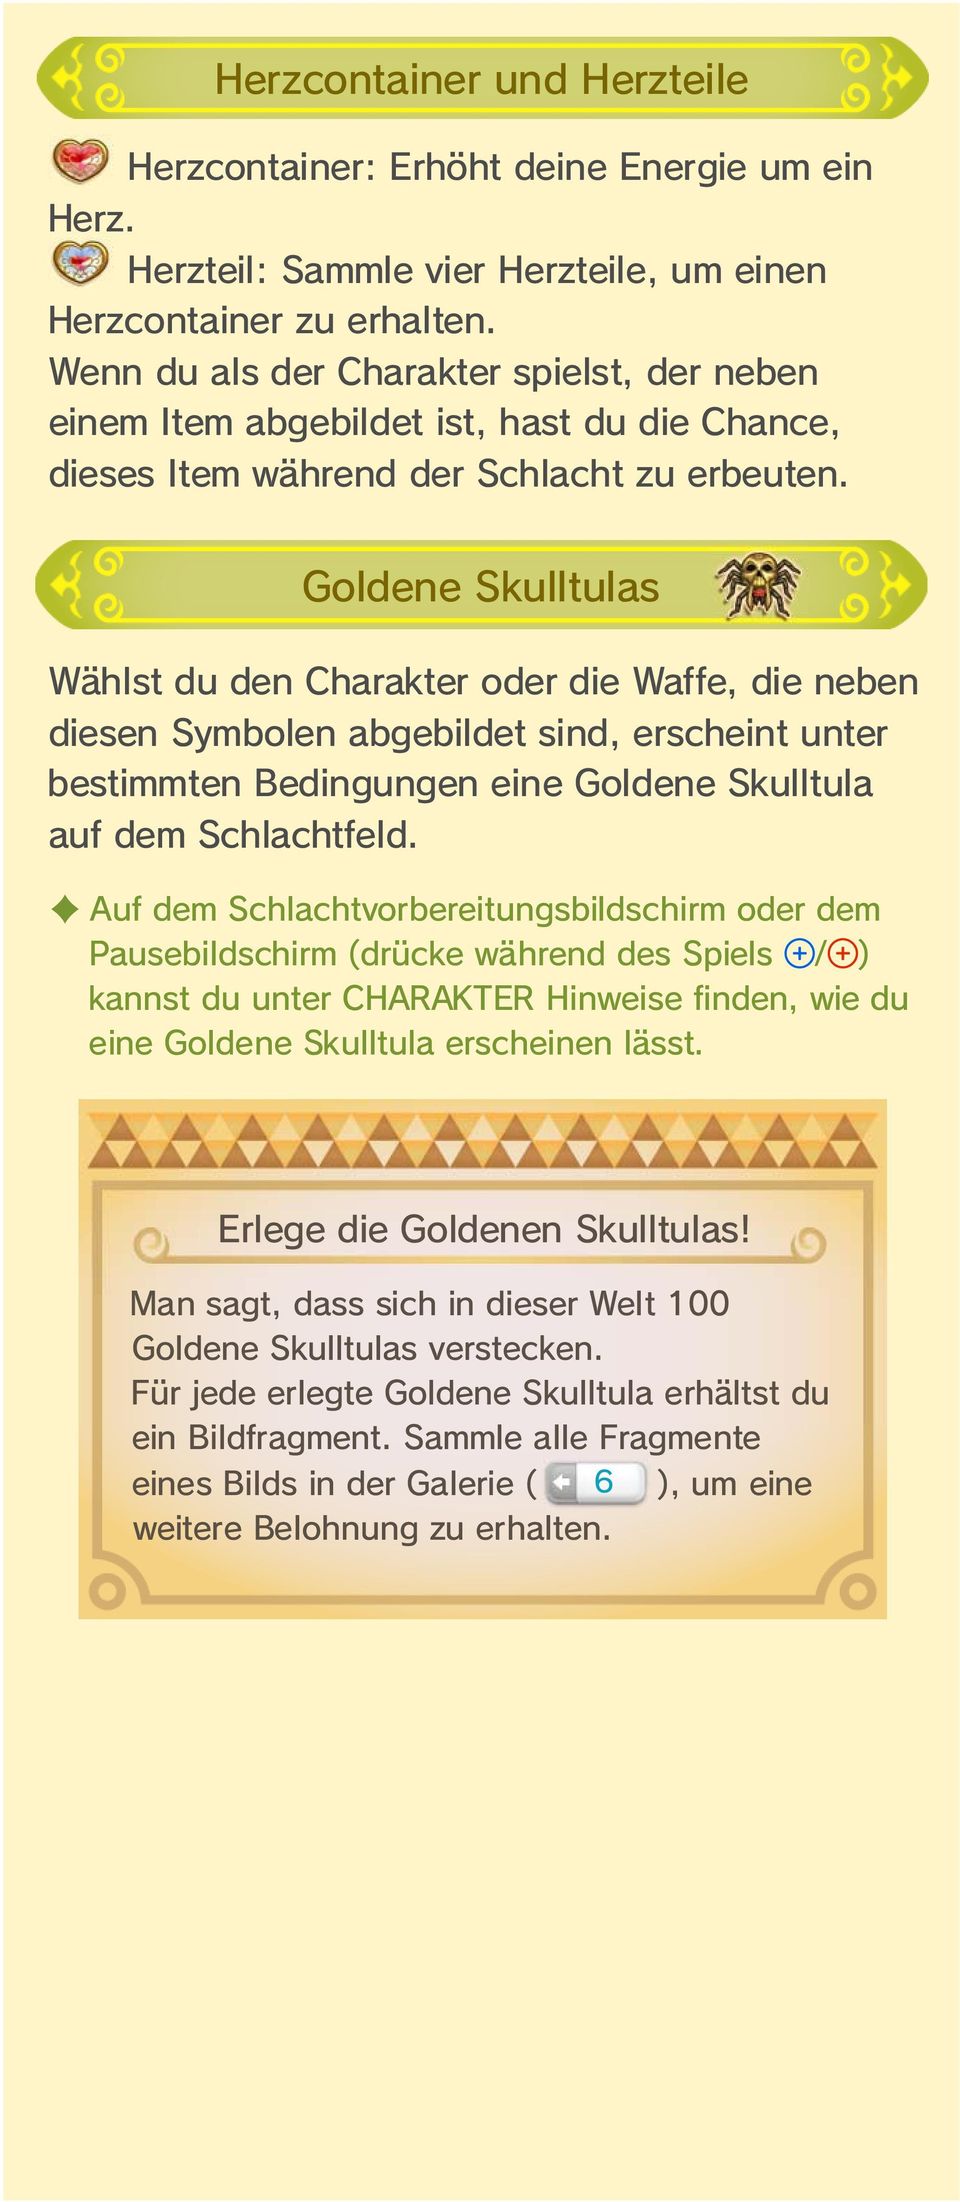 Goldene Skulltulas Wählst du den Charakter oder die Waffe, die neben diesen Symbolen abgebildet sind, erscheint unter bestimmten Bedingungen eine Goldene Skulltula auf dem Schlachtfeld.